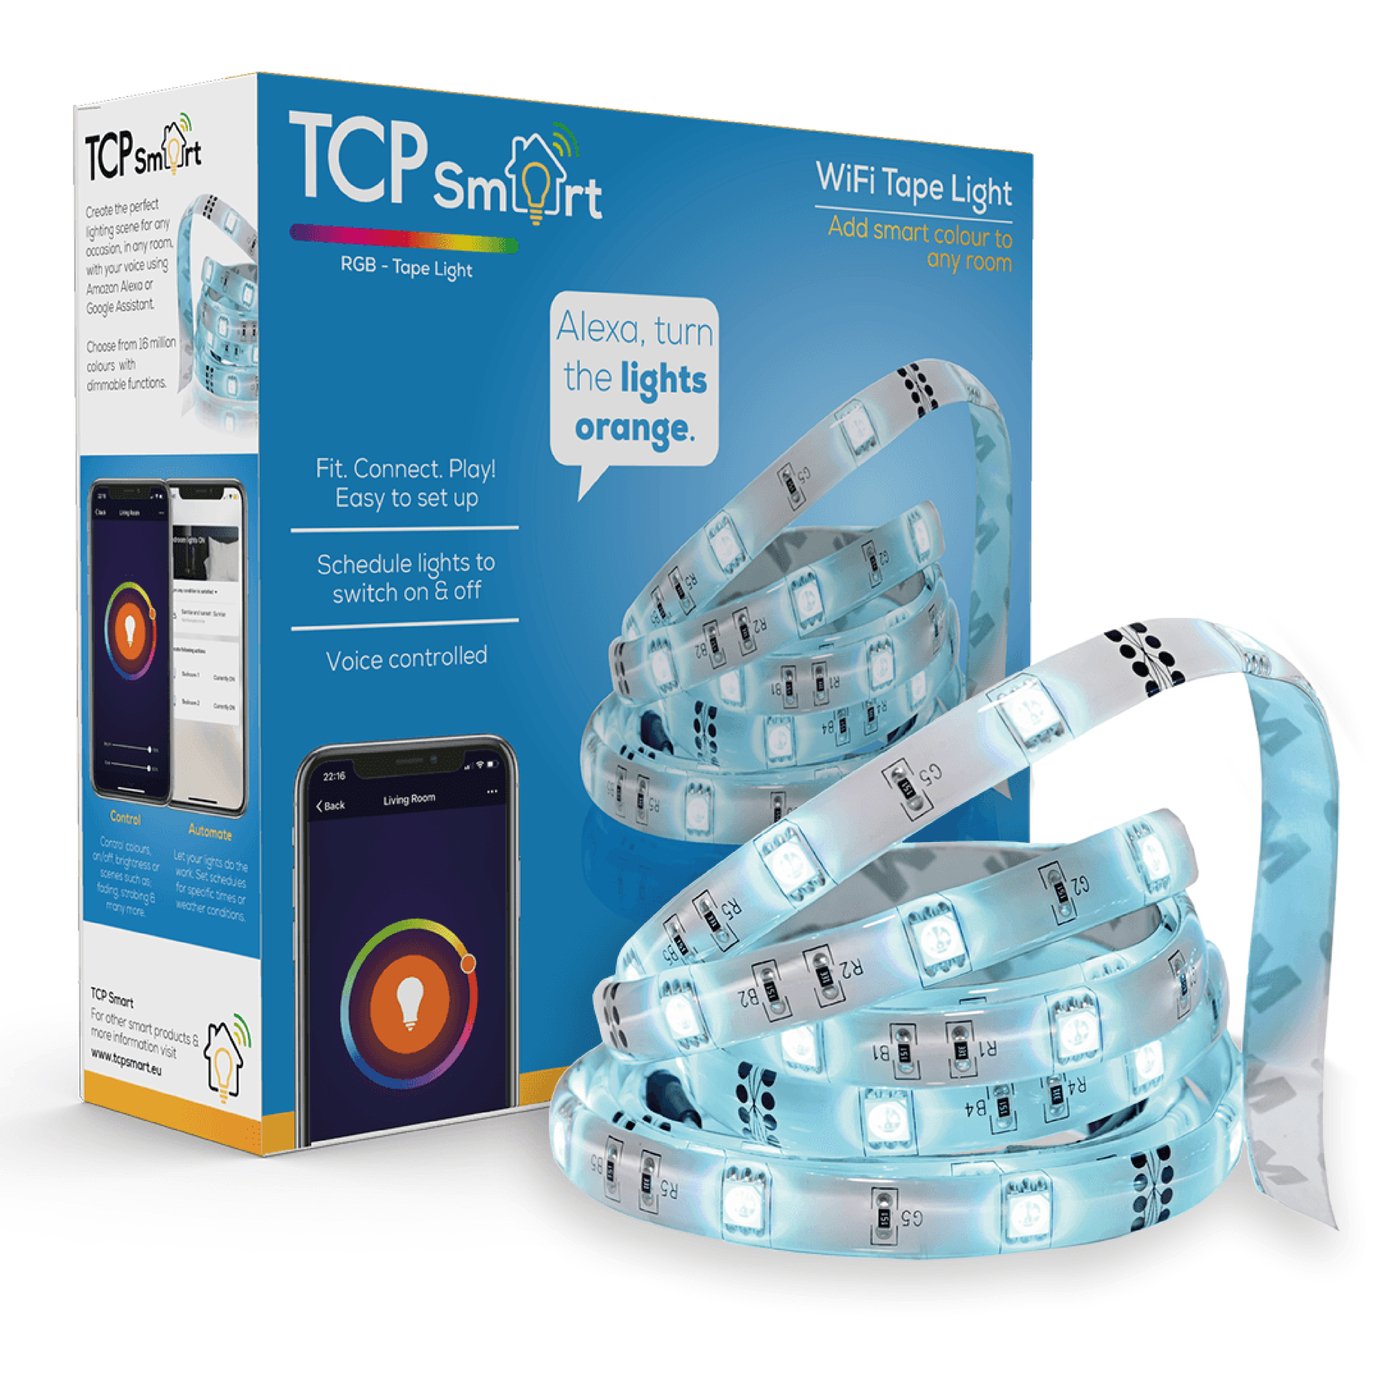 TCP LED Smart Wi-Fi Tape Light Review